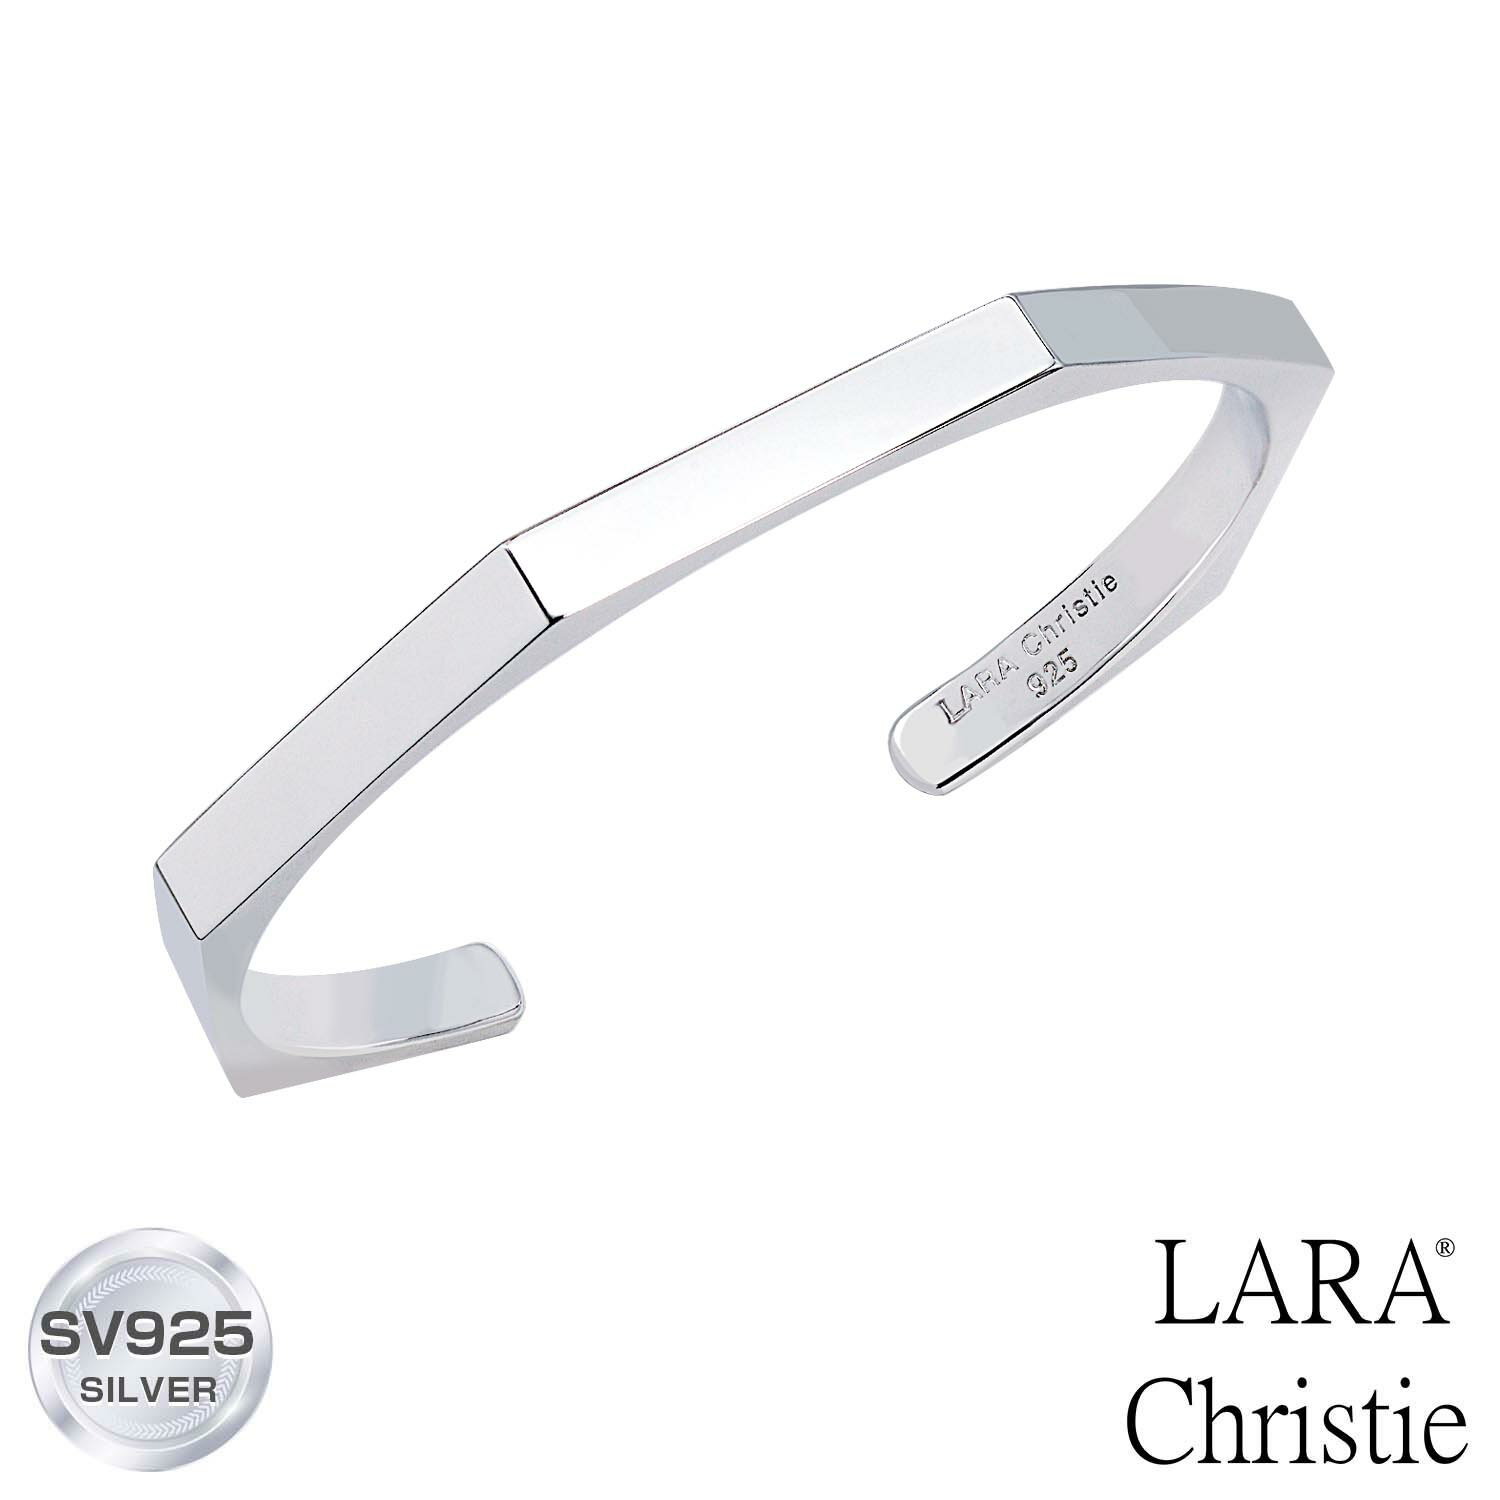 バングル レディース シルバー シンプルデザイン バングル [ WHITE Label ] LARA Christie (ララクリスティー) 誕生日プレゼント